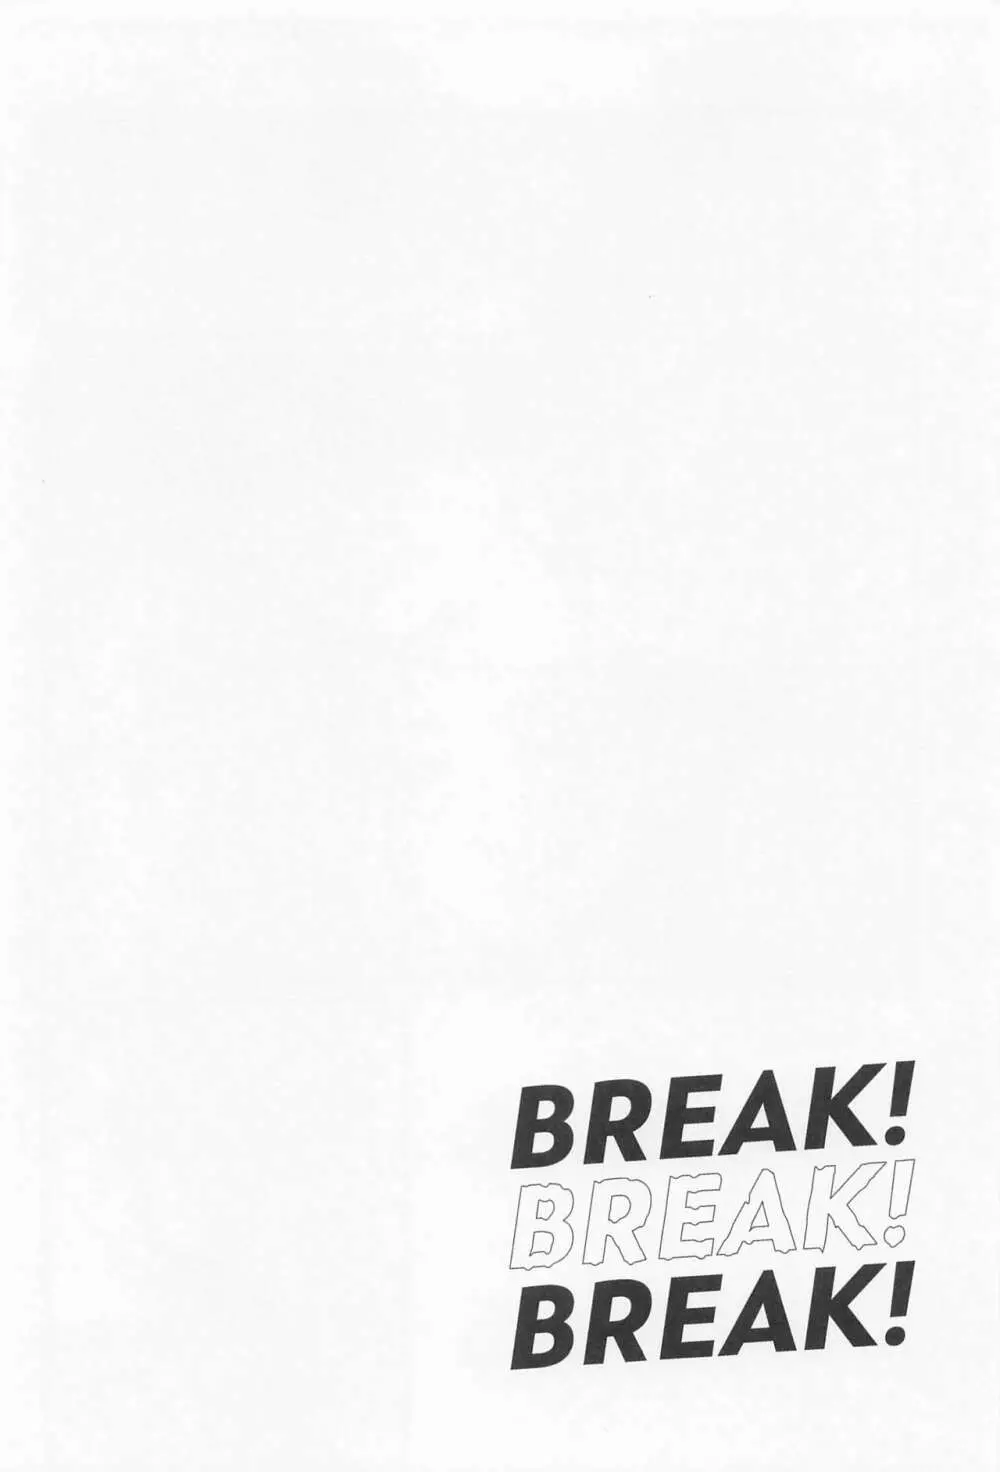 BREAK! BREAK! BREAK! - page11